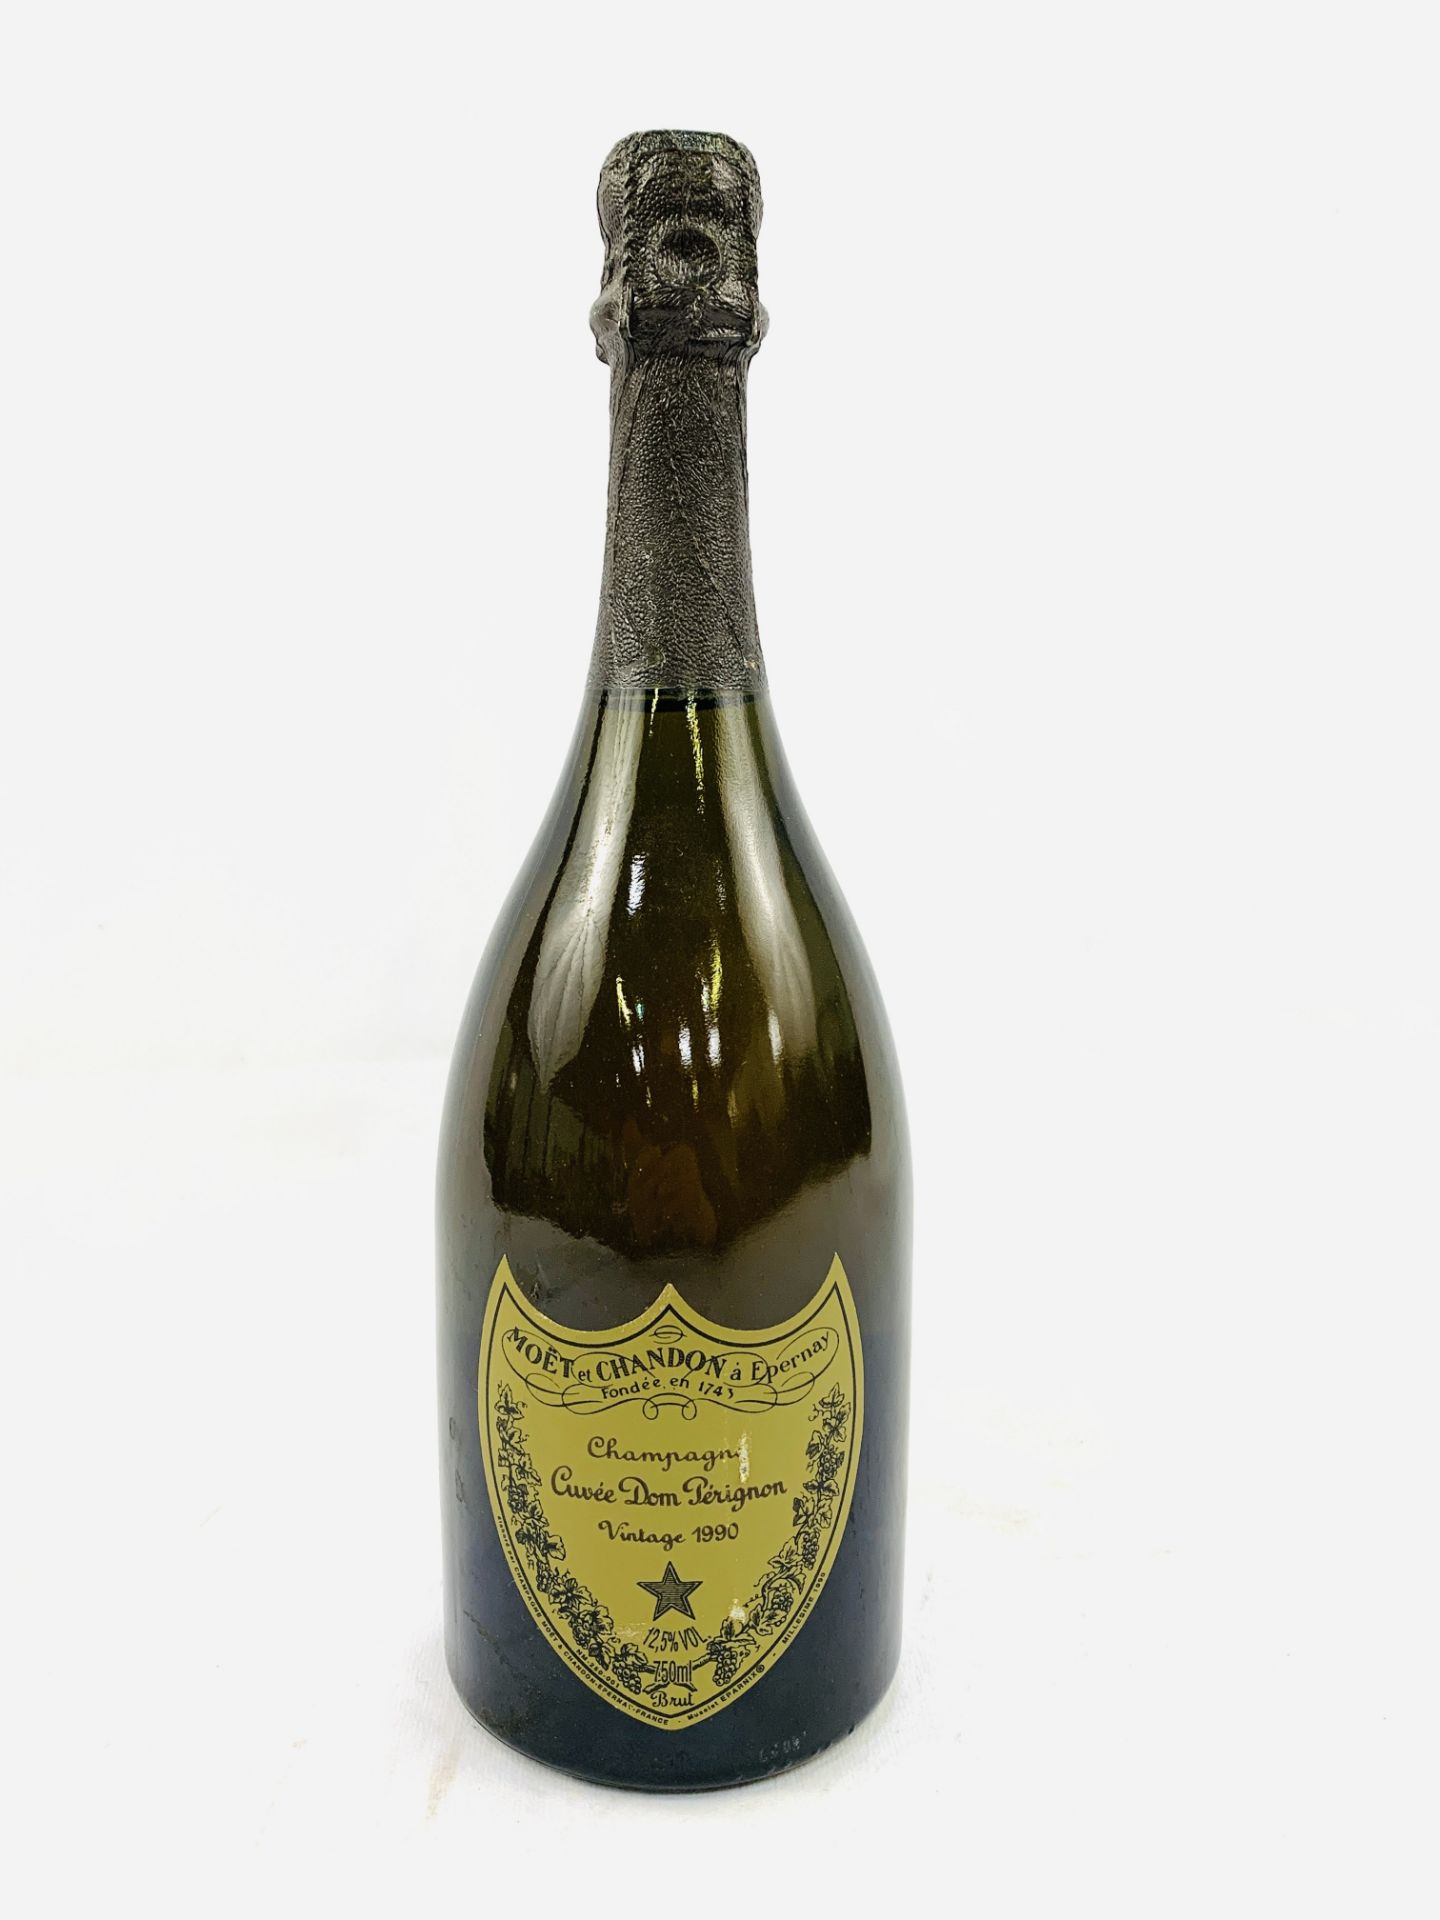 75cl bottle of 1990 Cuvee Dom Perignon vintage champagne